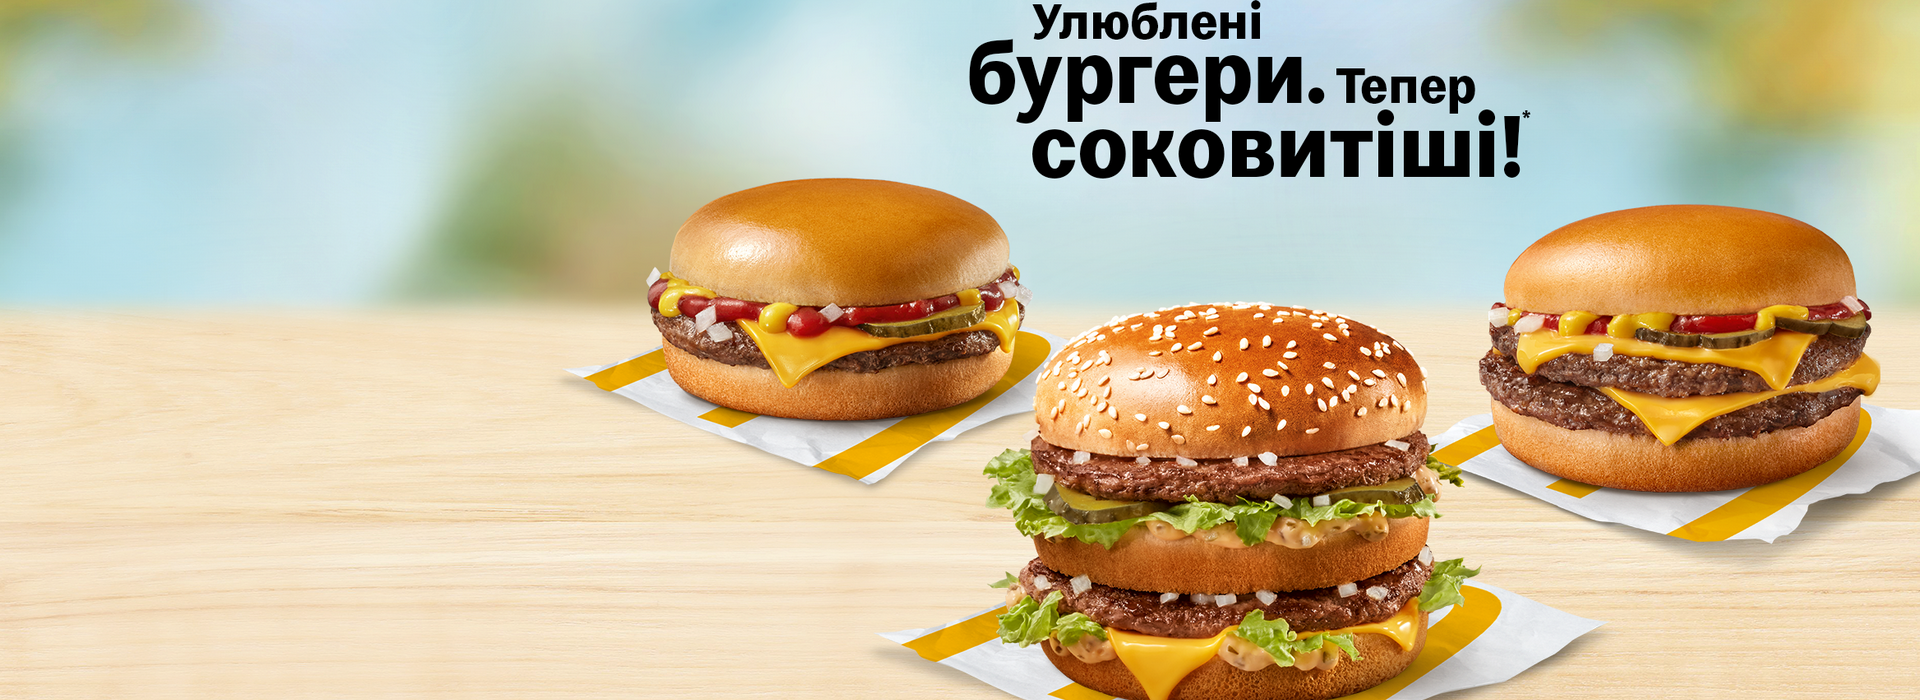 McDonald’s в Україні оновив спосіб приготування бургерів Біг Мак, Чізбургер і Дабл Чізбургер. Багато малих змін запроваджені заради більшої соковитості класичних бургерів і більш яскравого смаку